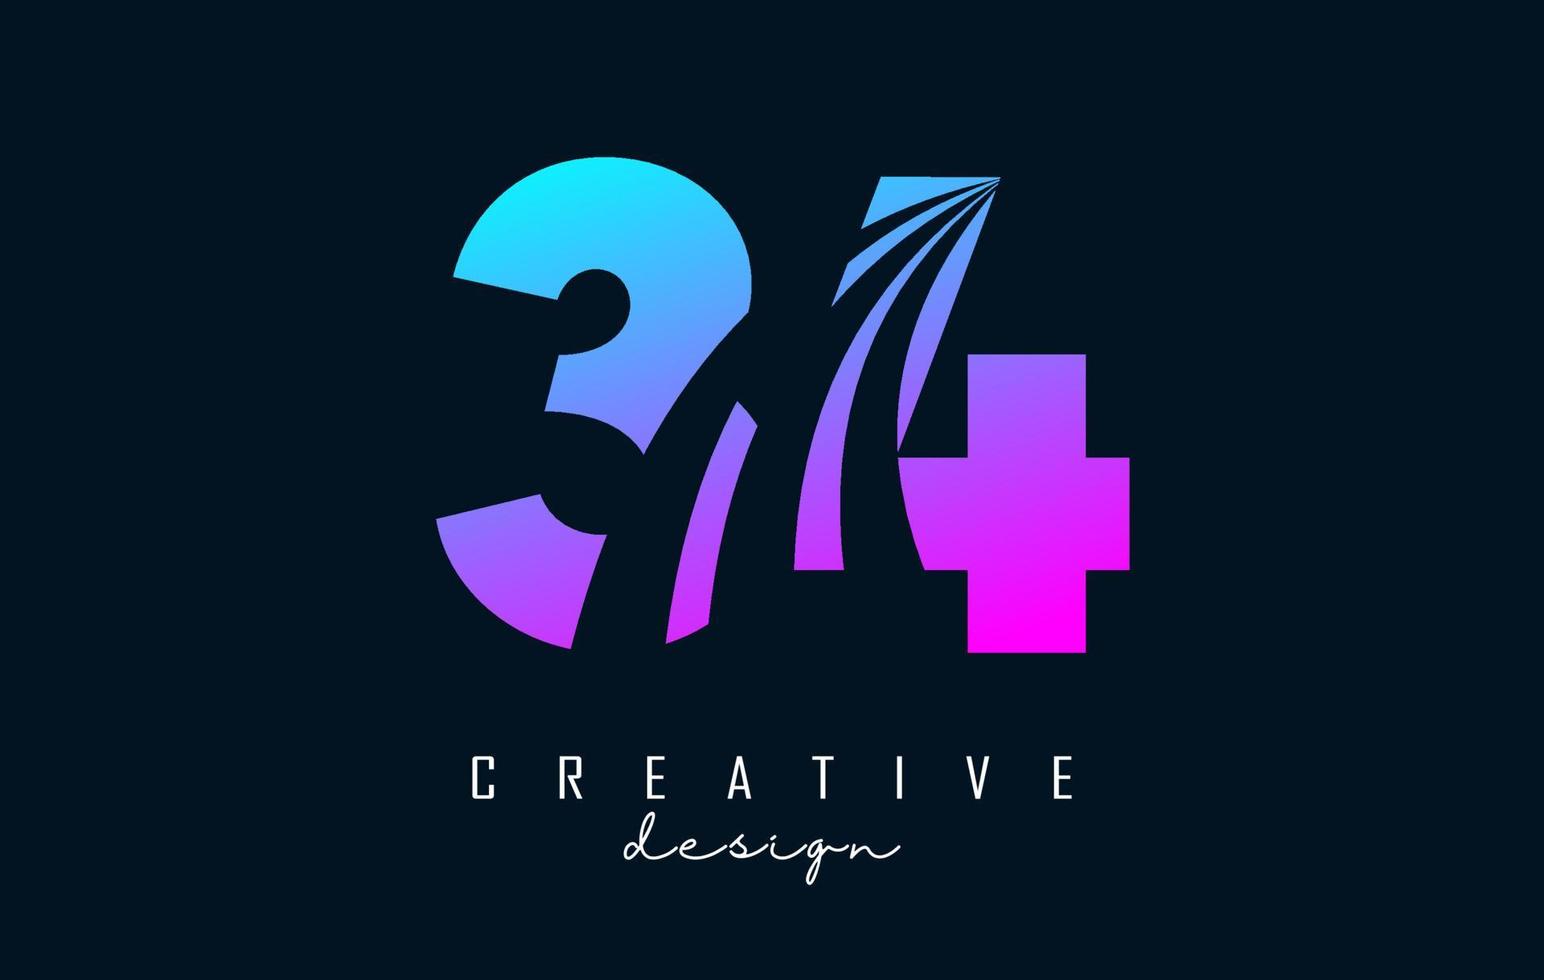 buntes kreatives nummer 34 3 4 logo mit führenden linien und straßenkonzeptdesign. Nummer mit geometrischem Design. vektor